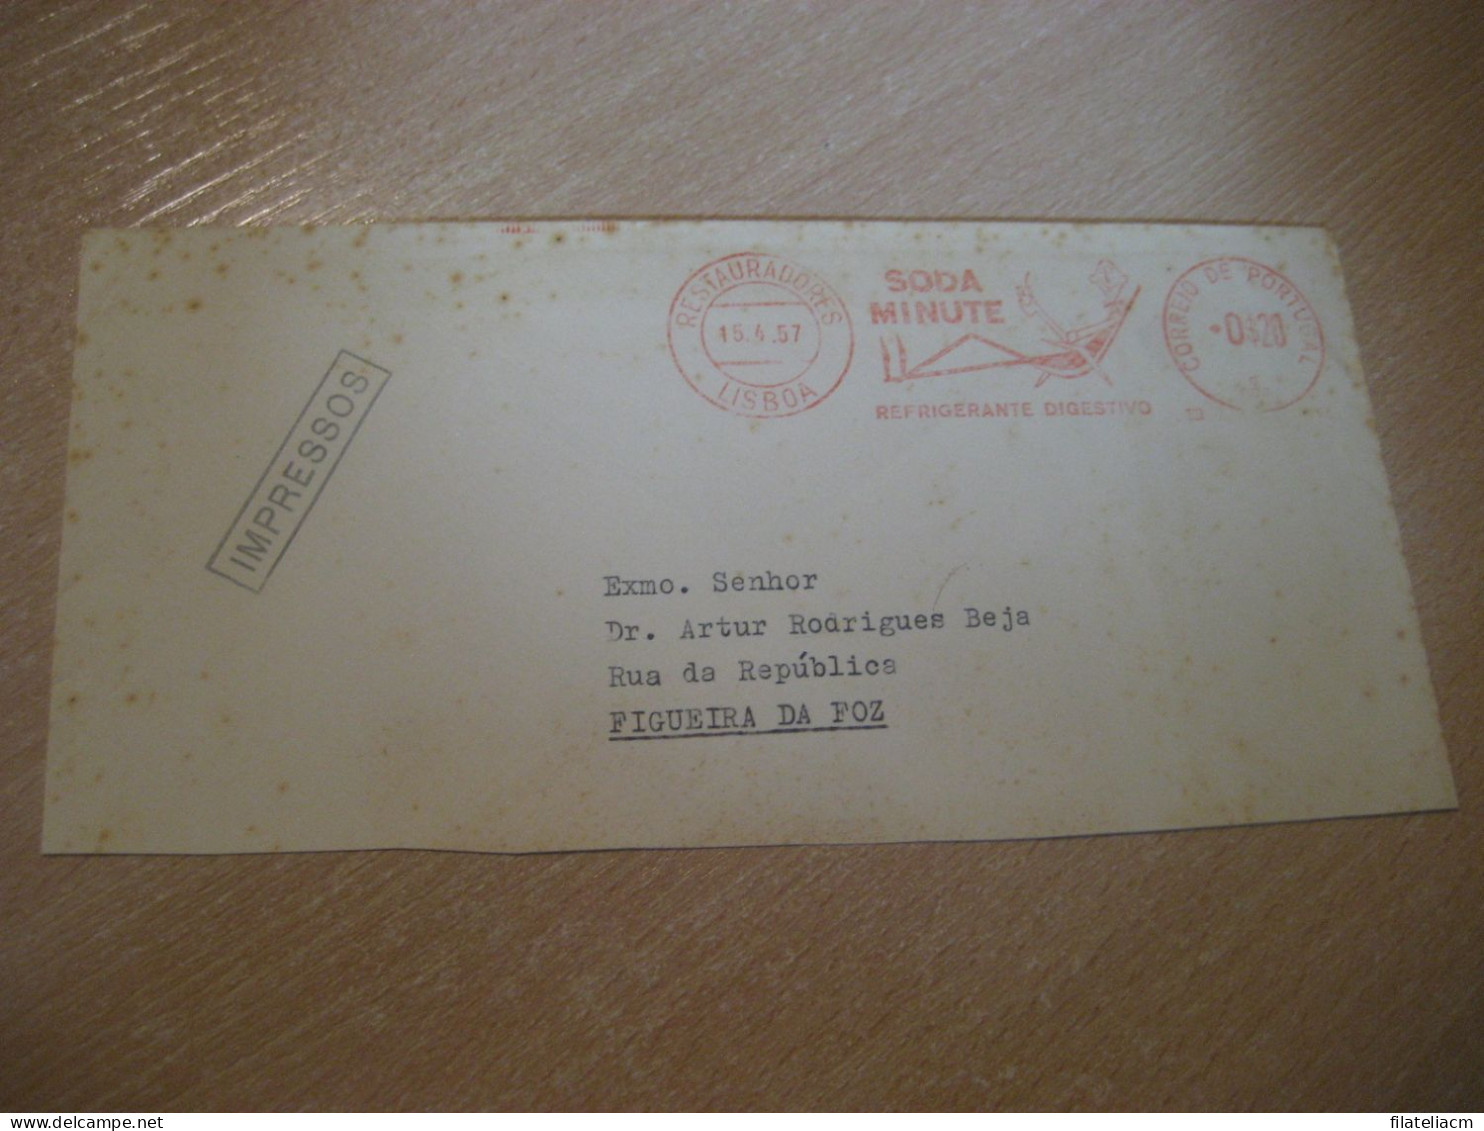 LISBOA 1957 To Figueira Da Foz Soda Minute Refrigerante Digestivo Drink Pharmacy Meter Mail Cancel Cut Cover PORTUGAL - Cartas & Documentos